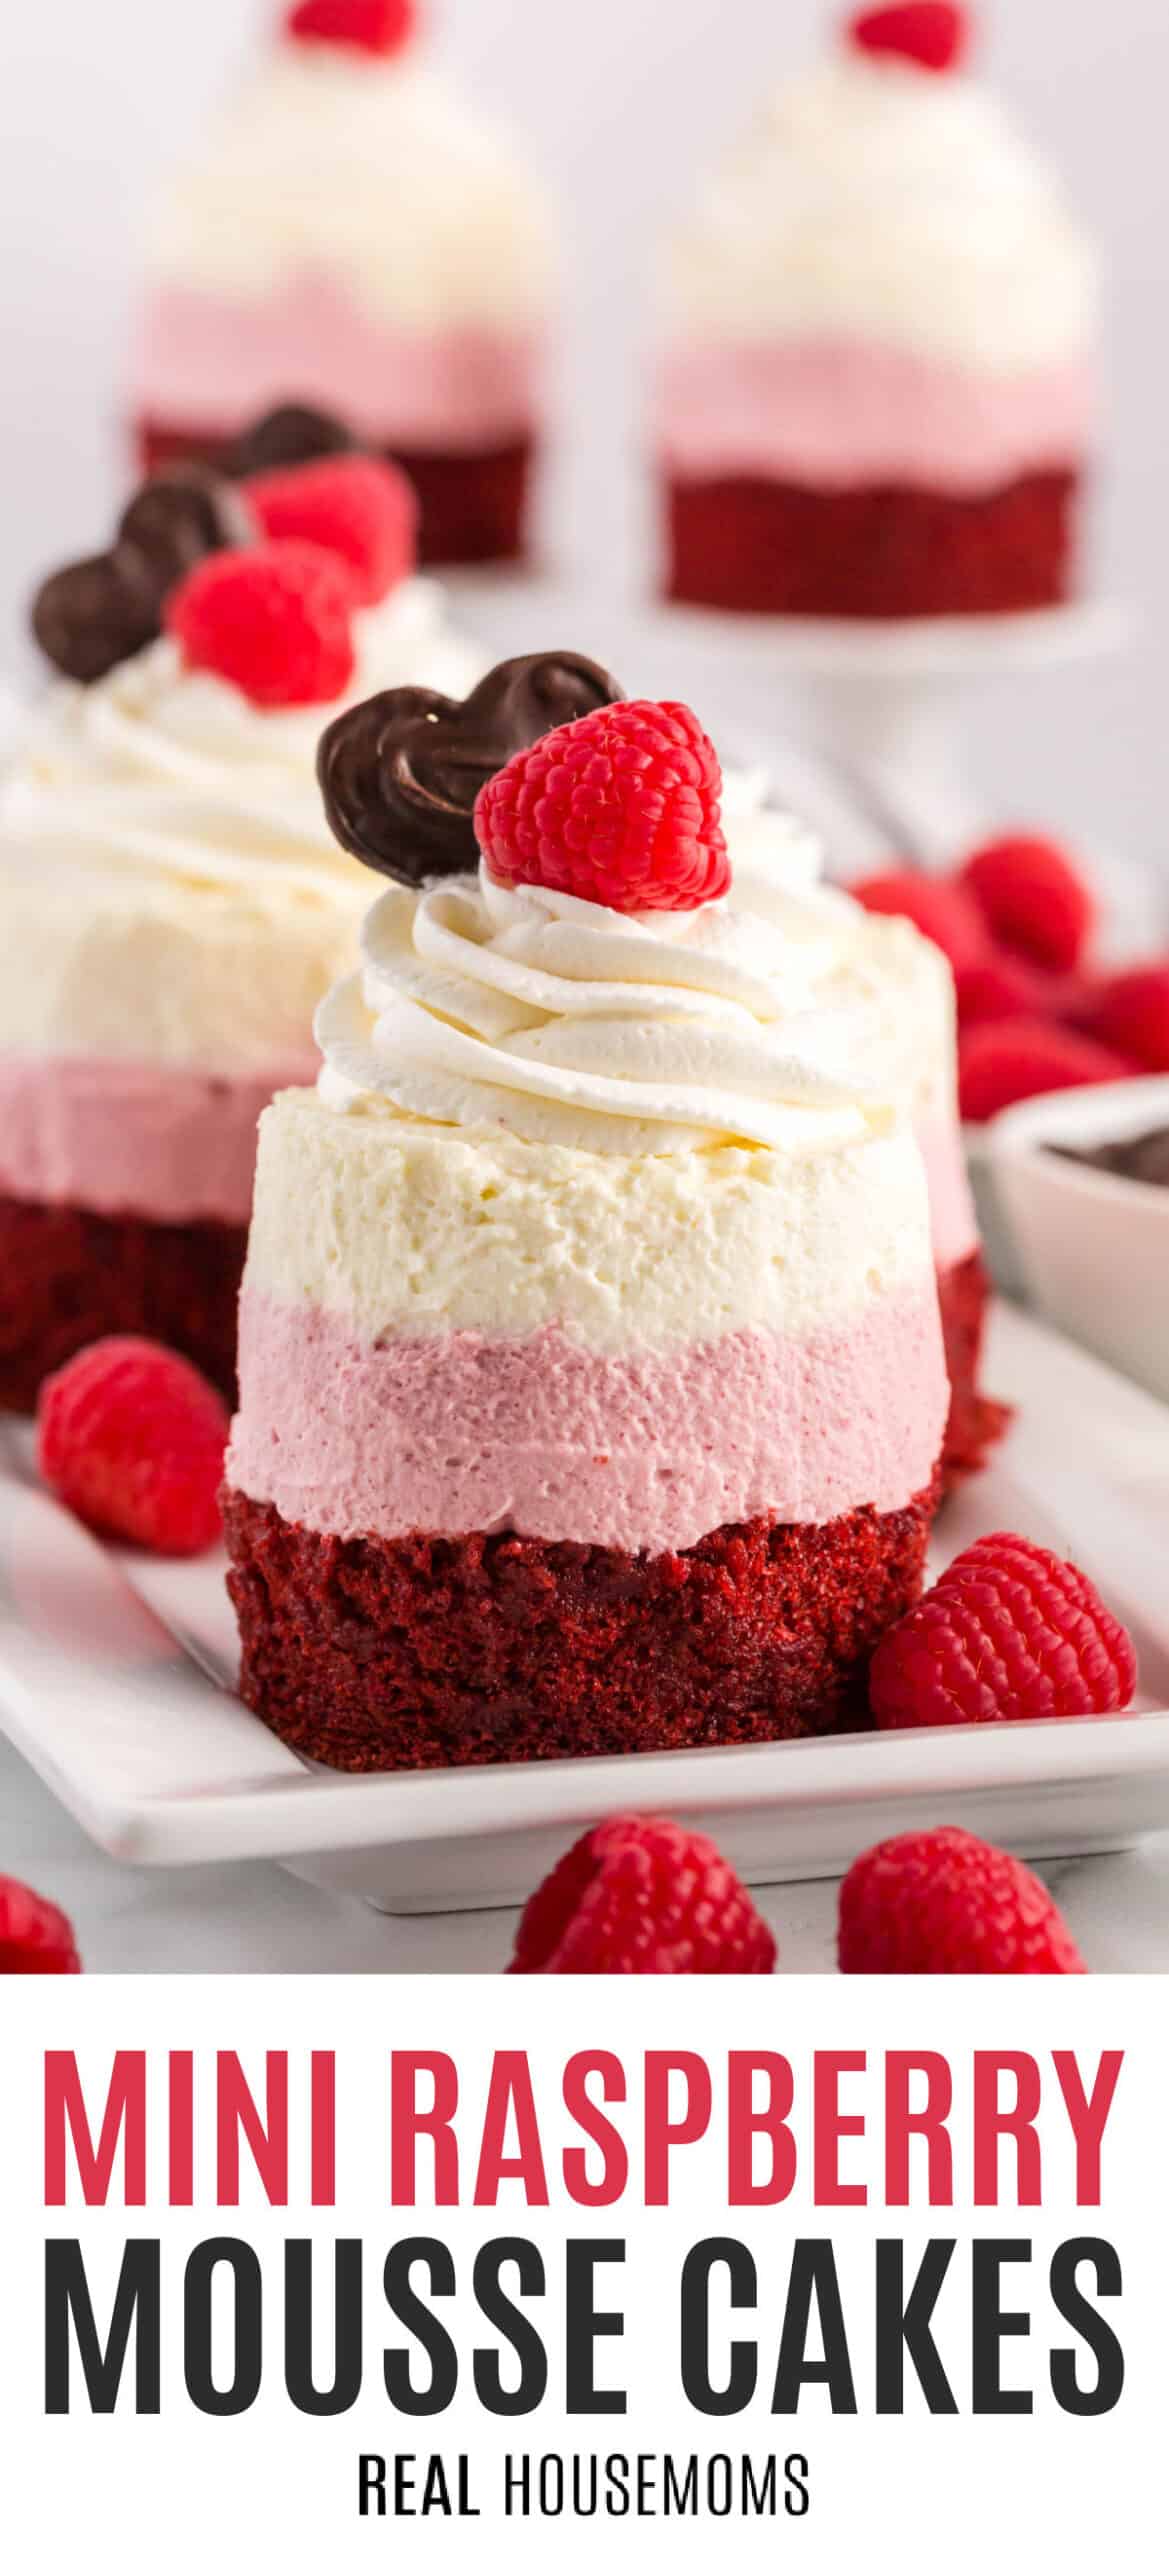 Mini Raspberry Mousse Cakes